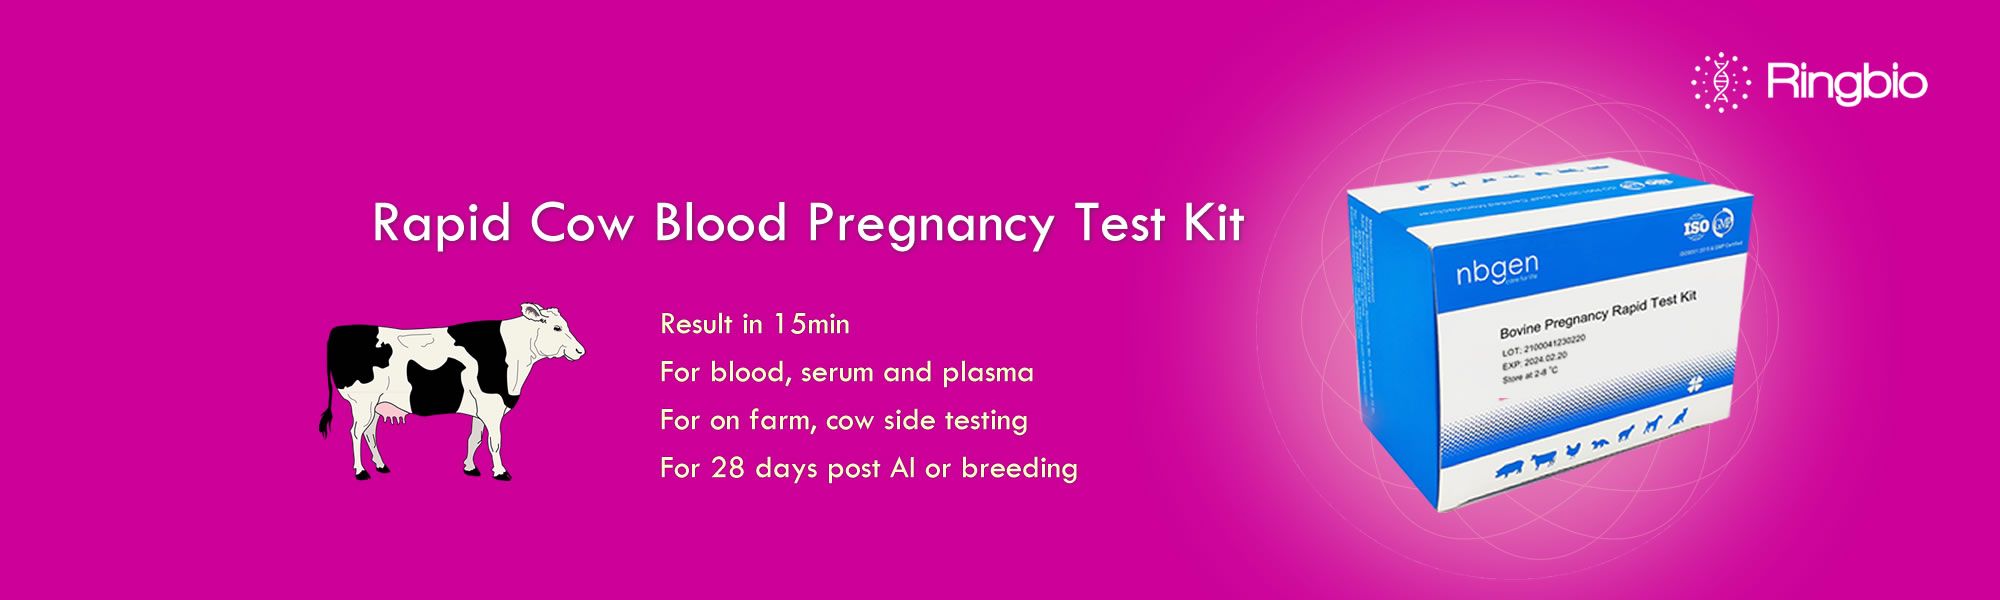 Le kit de test de grossesse rapide sur sang total est ici